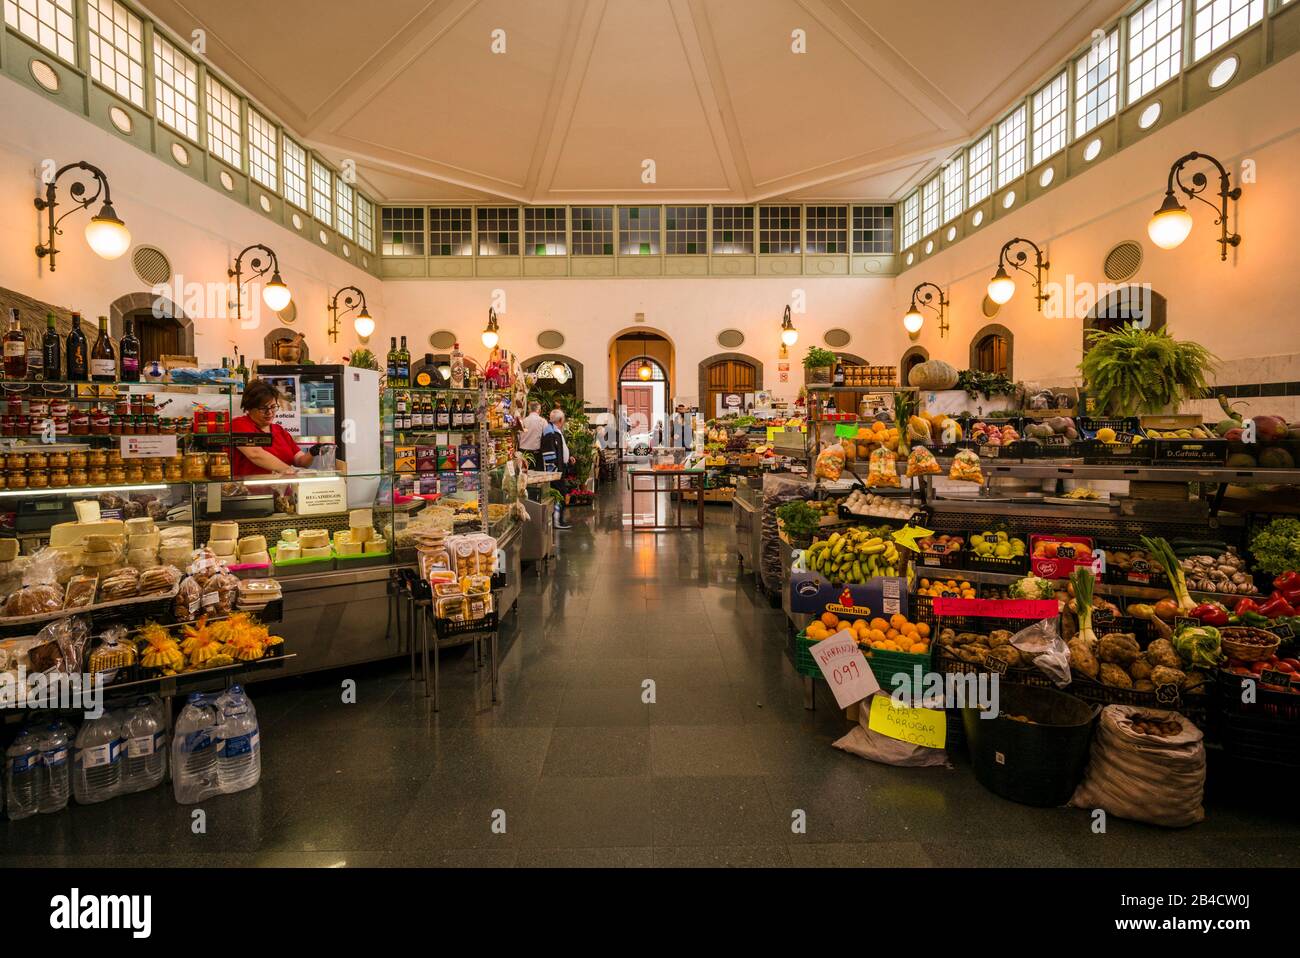 Spain, Canary Islands, La Palma Island, Santa Cruz de la Palma, Mercado La Recova, food market, interior, NR Stock Photo